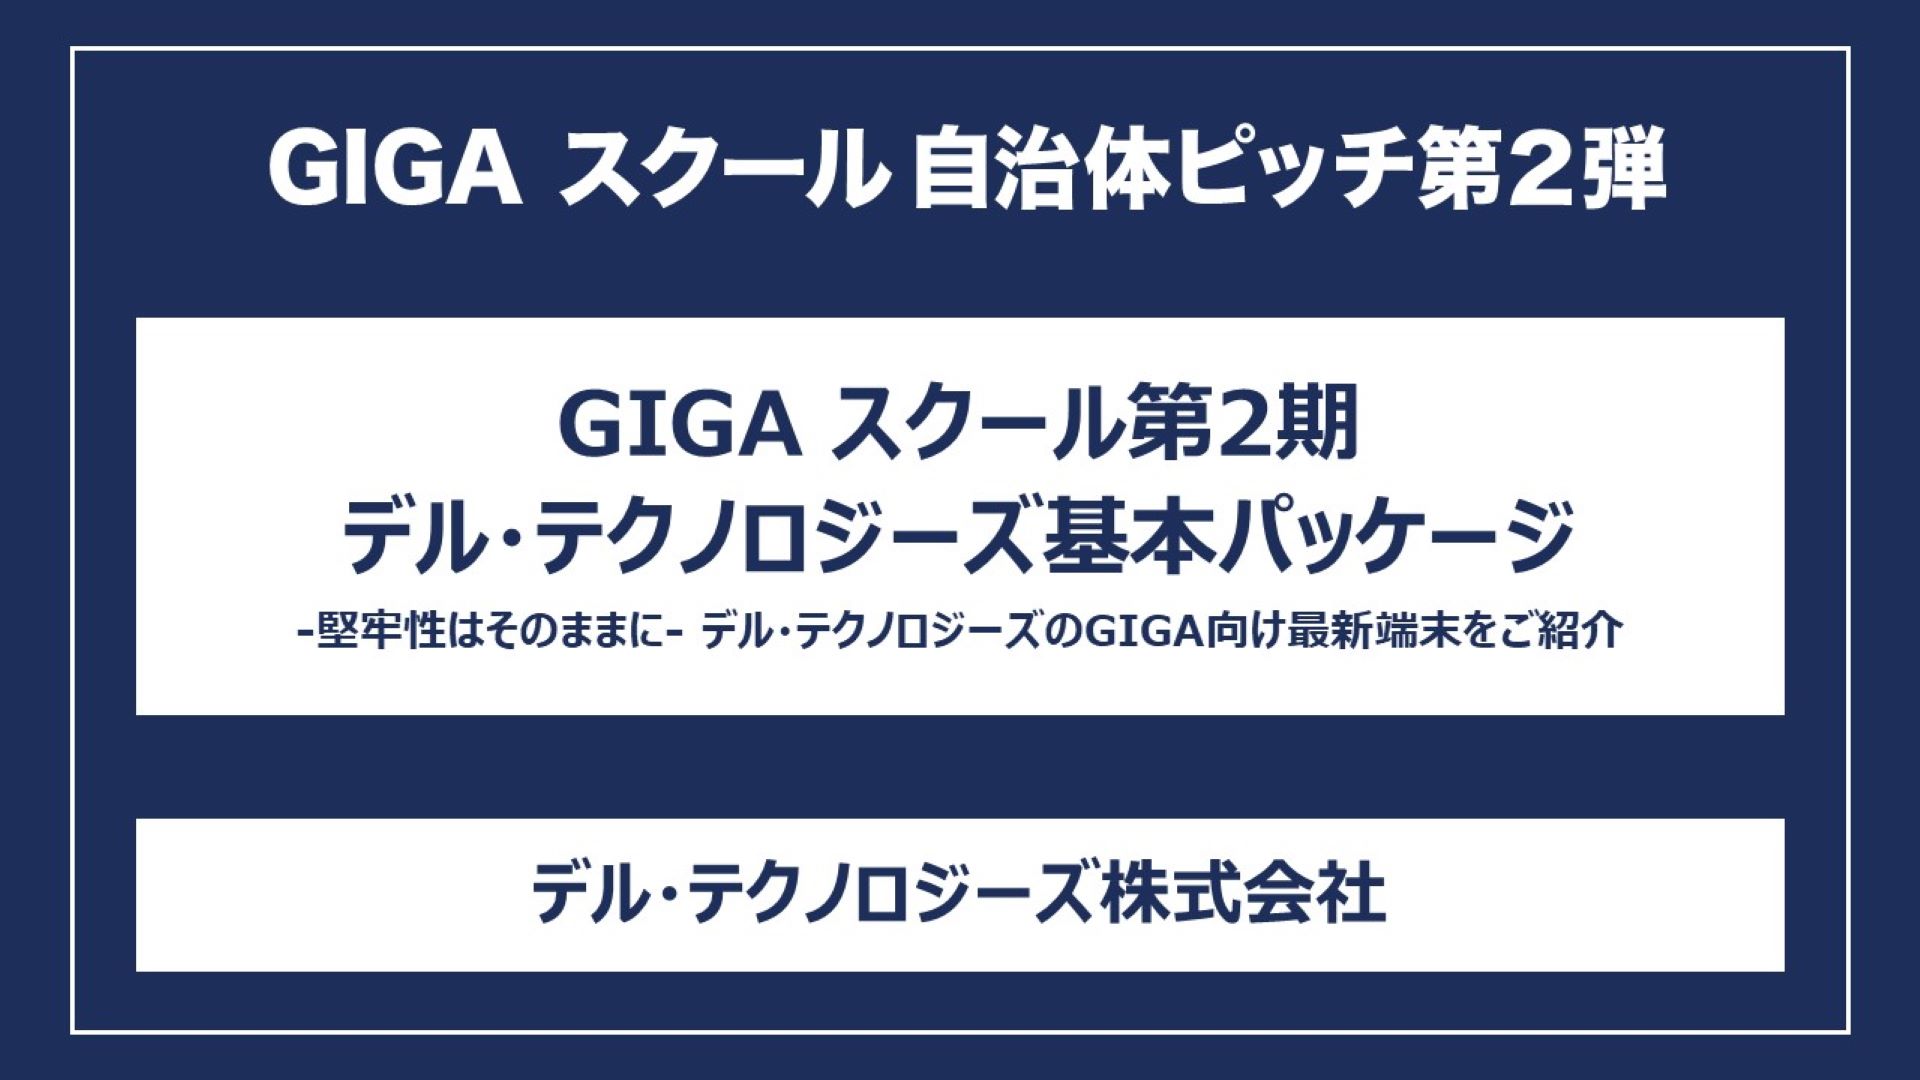 GIGA スクール第2期デル・テクノロジーズ基本パッケージ -堅牢性はそのままに- デル・テクノロジーズのGIGA向け最新端末をご紹介